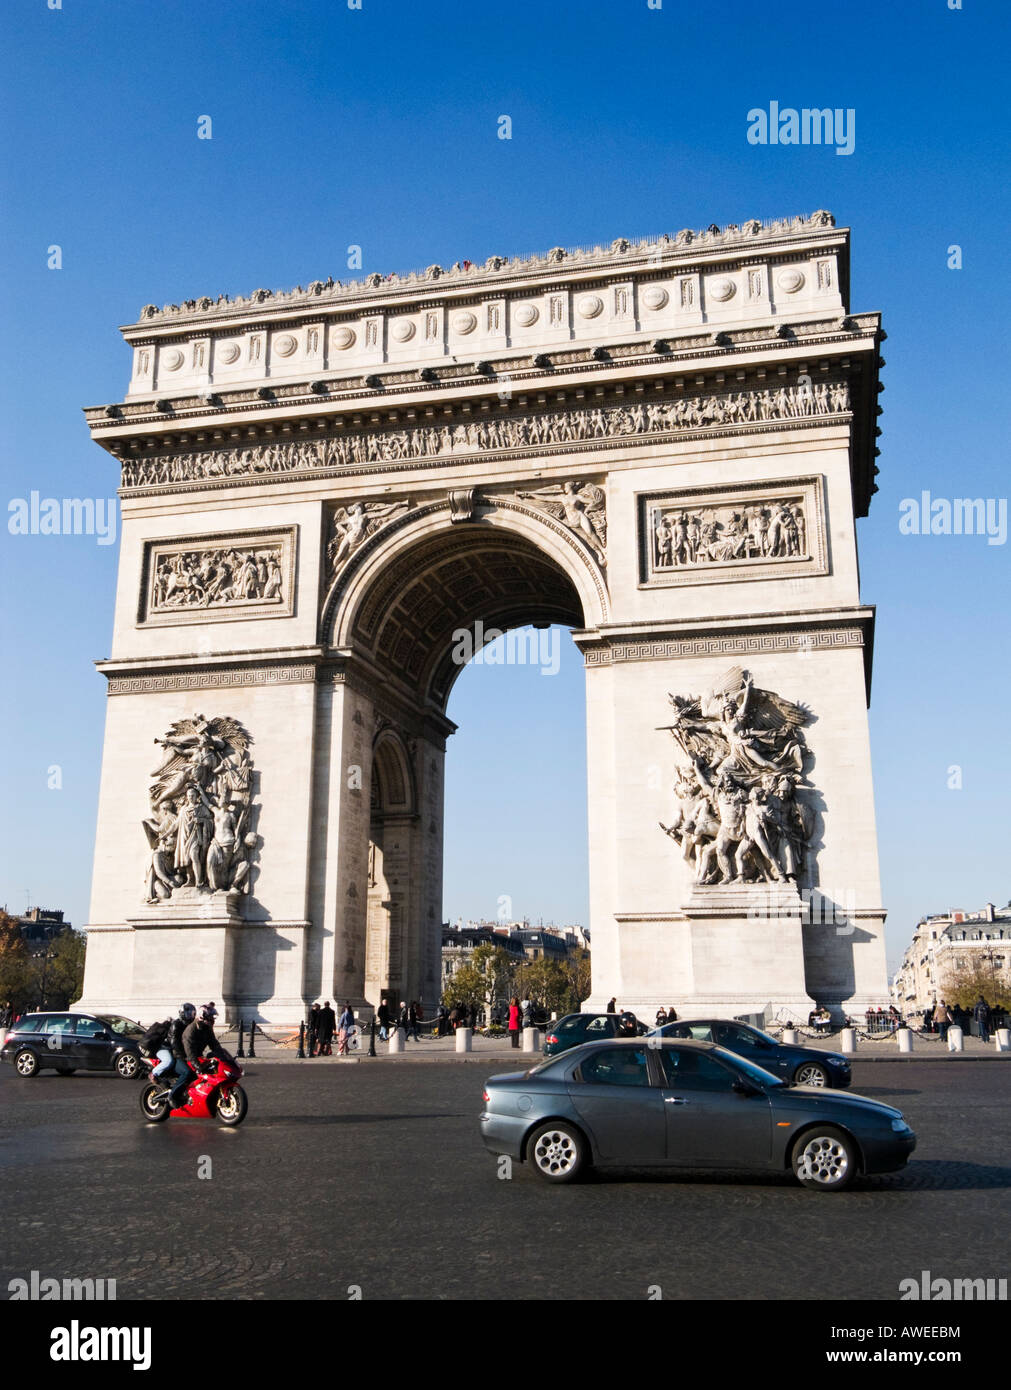 Paris, Frankreich: Arc de Triomphe mit Autos fahren um ihn herum Stockfoto